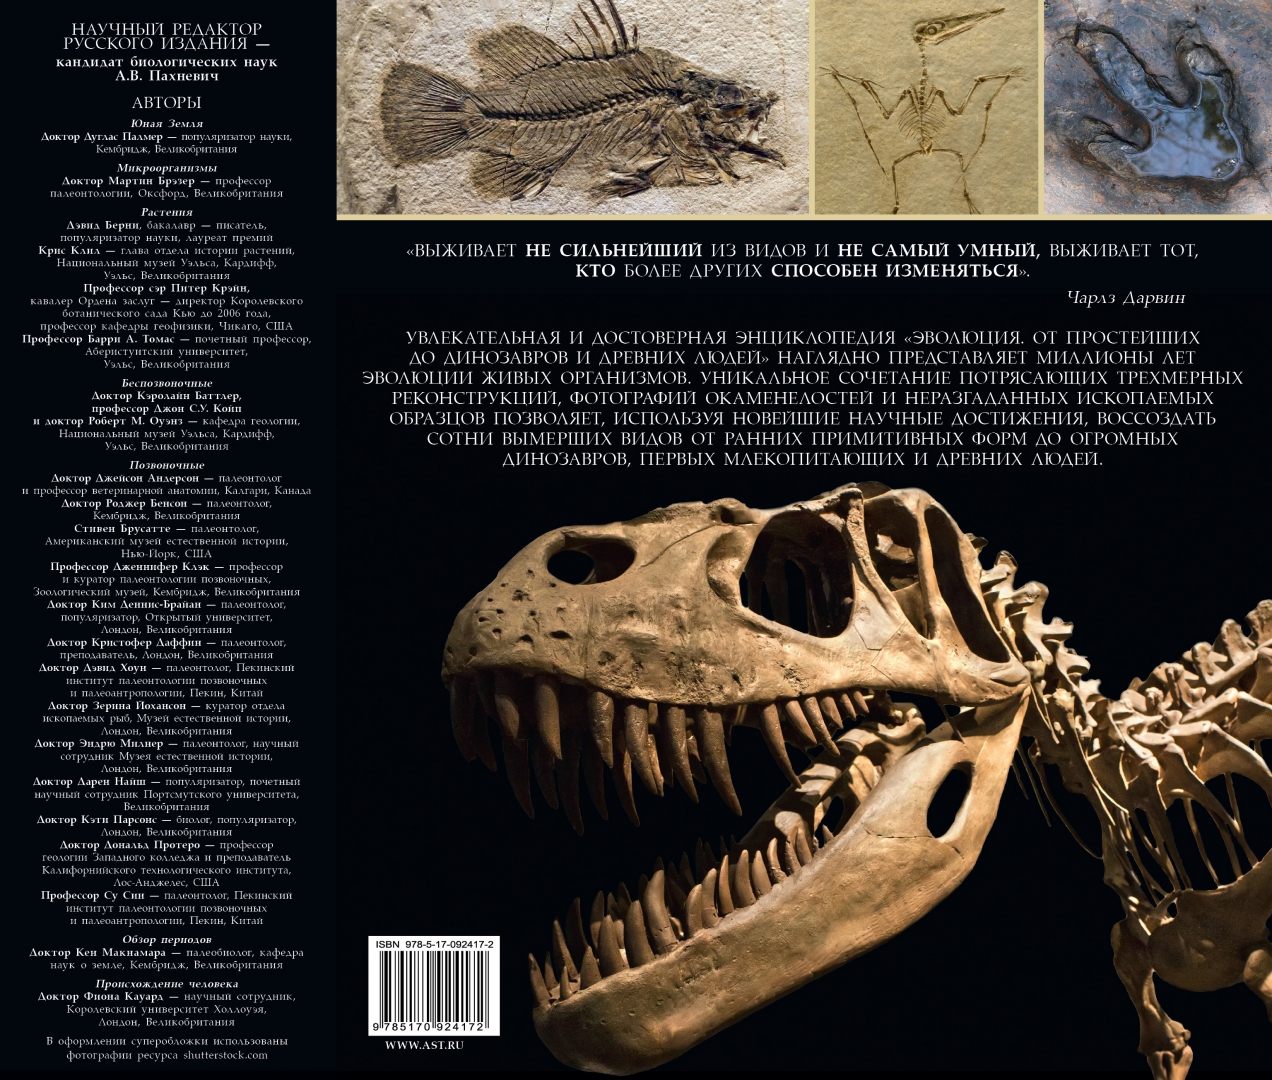 Иллюстрация 1 из 2 для Эволюция от одноклеточных простейших до динозавров - Палмер, Берни, Брэзир | Лабиринт - книги. Источник: Лабиринт